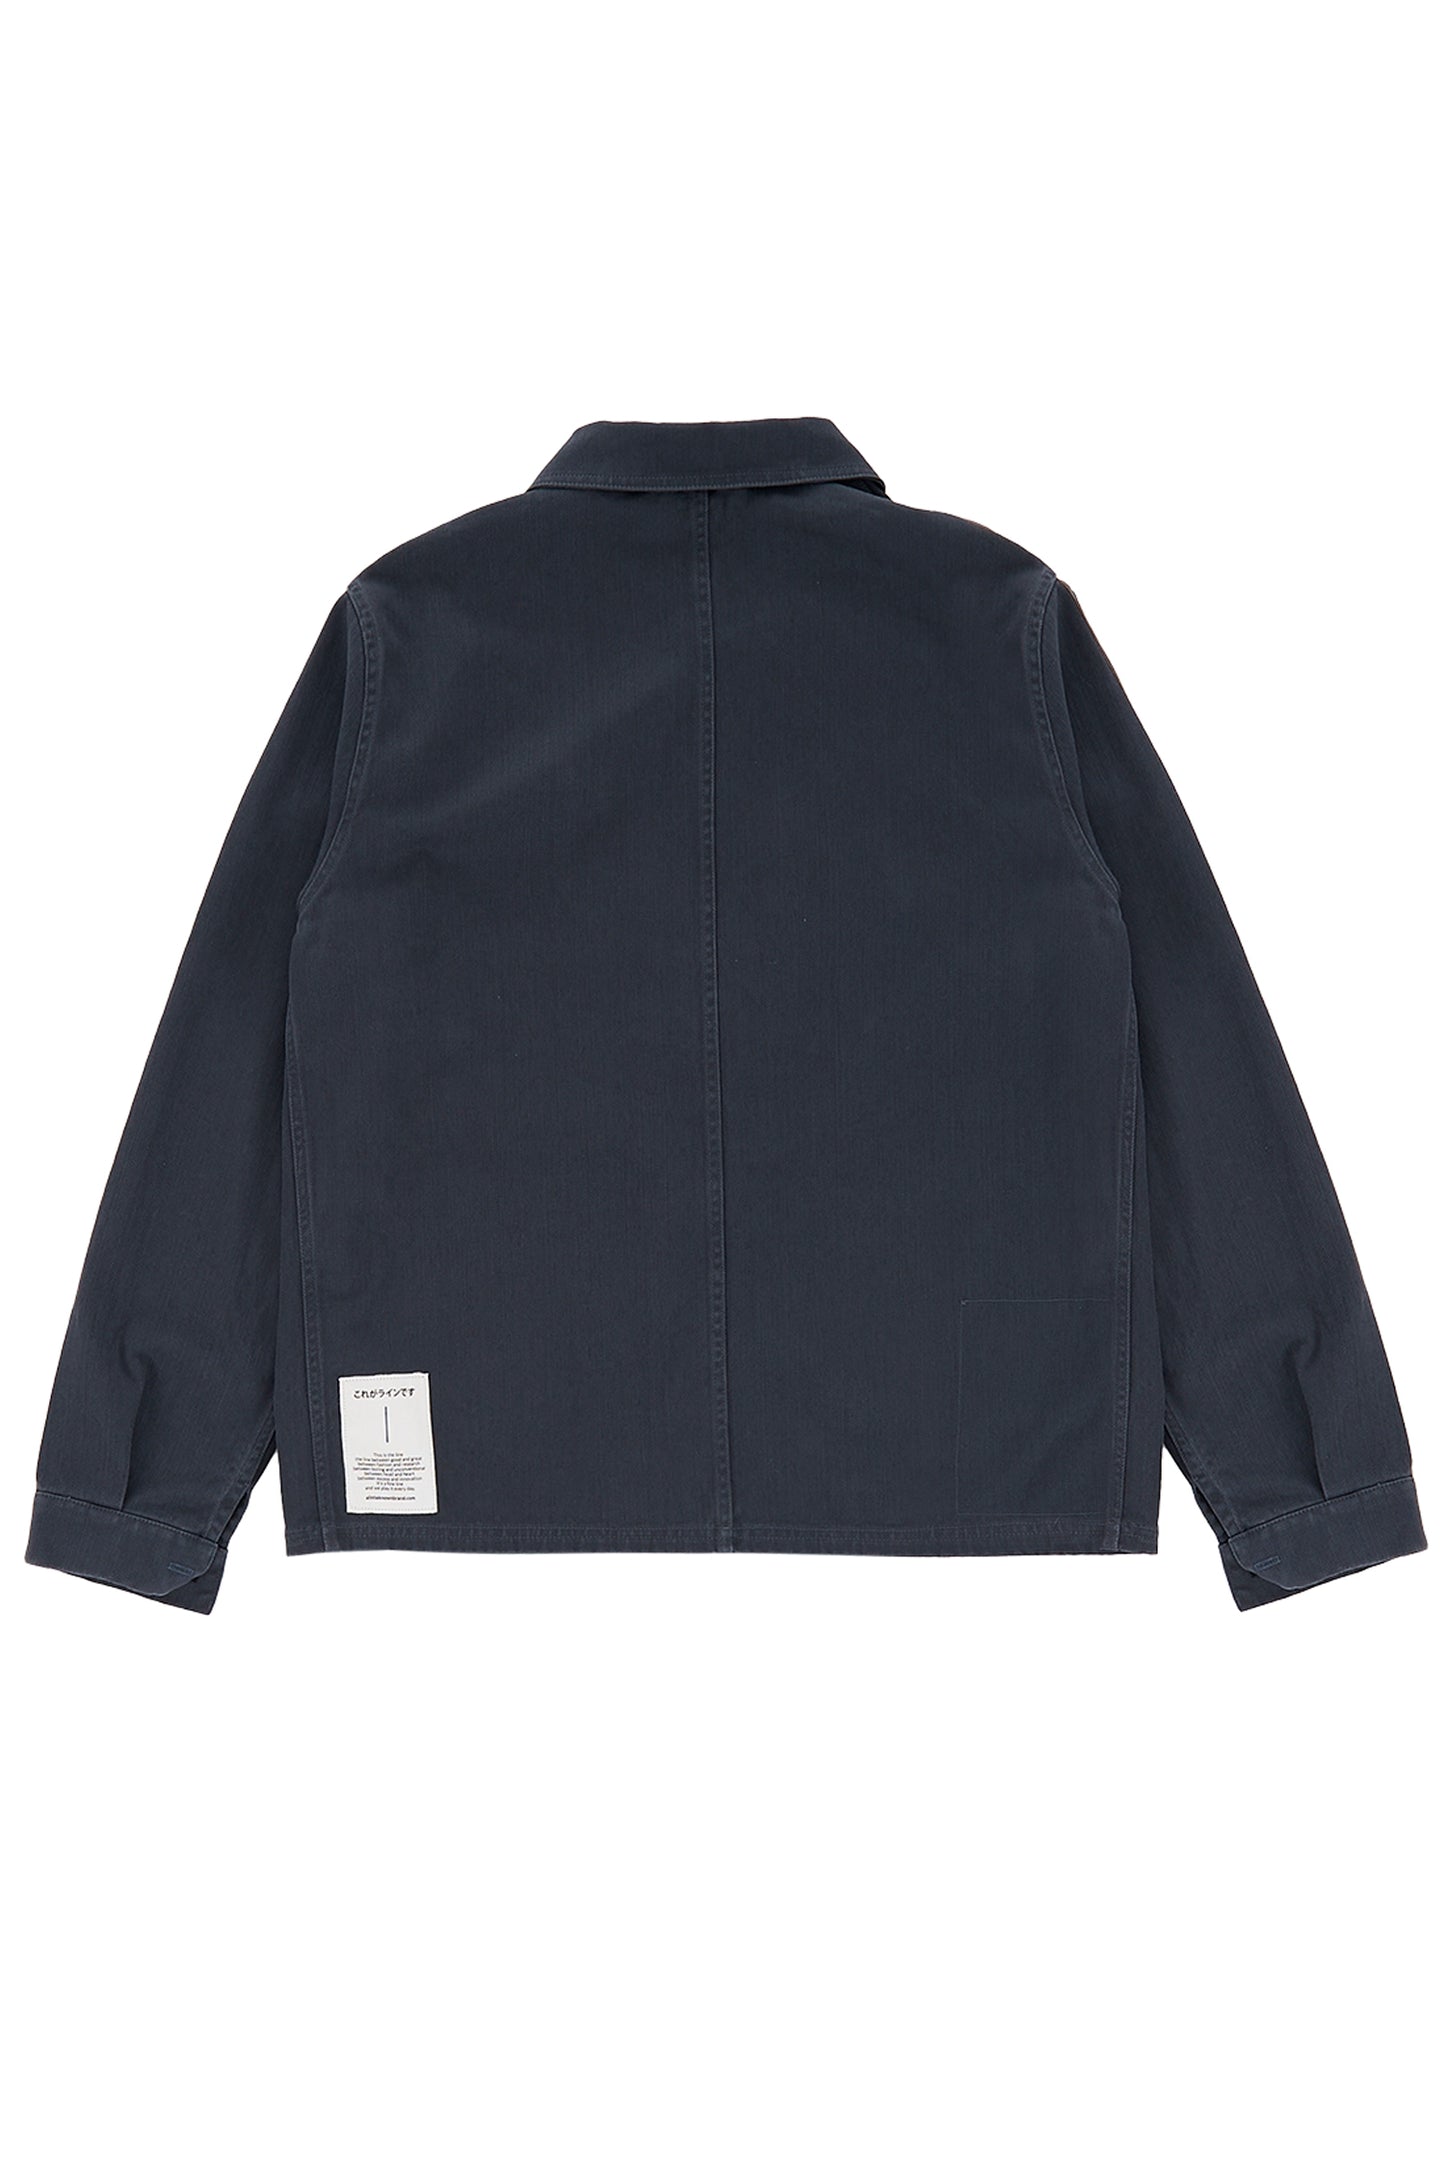 French Work Jacket – Sunburst Blue